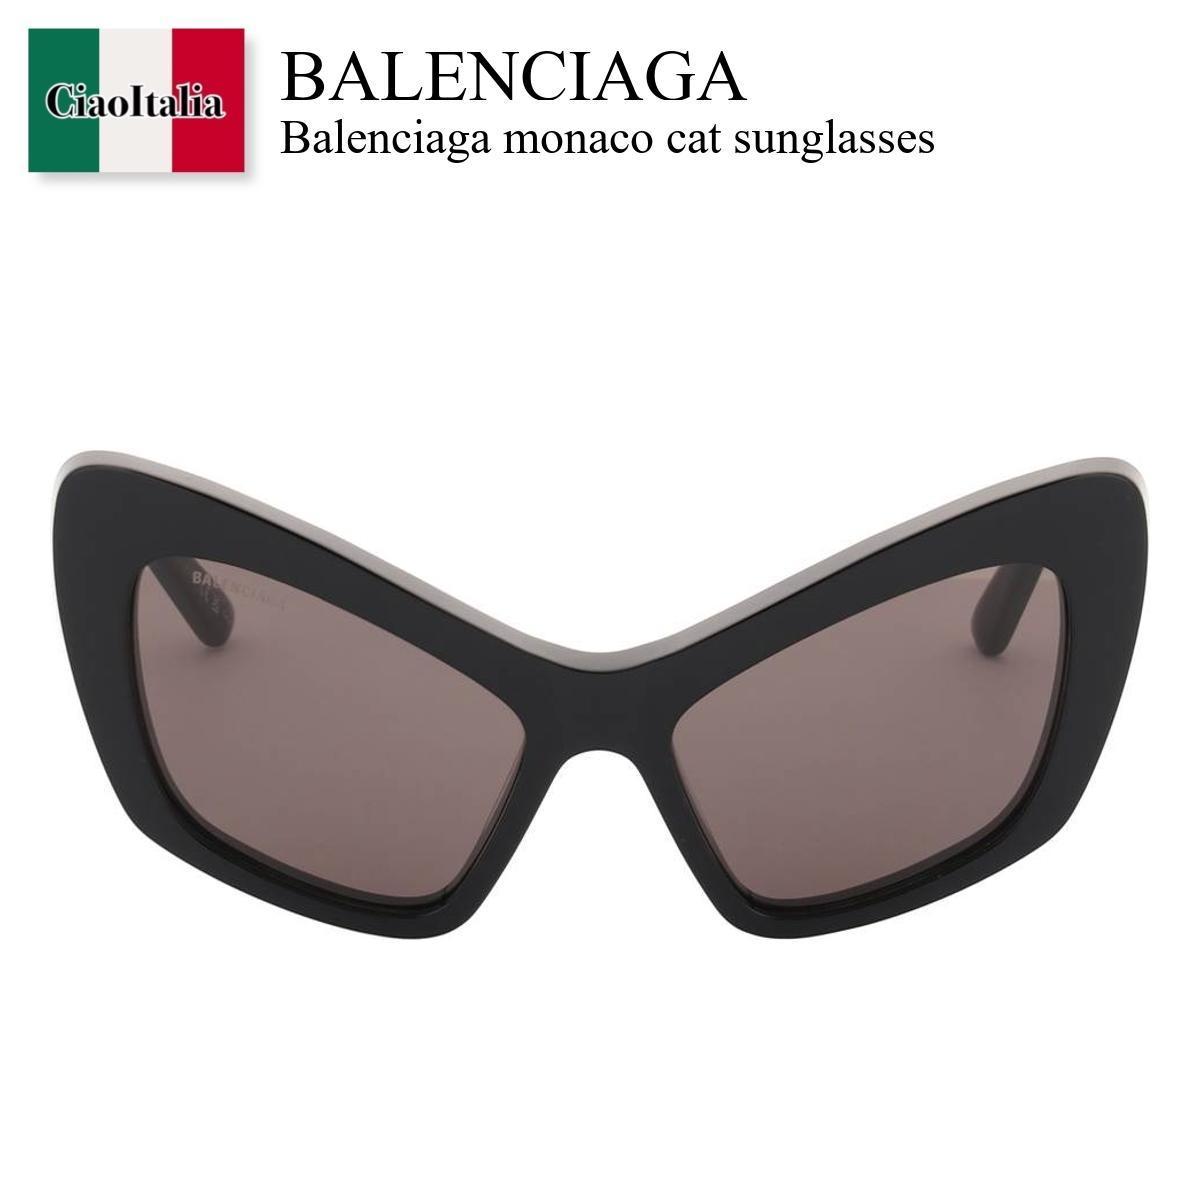 バレンシアガ サングラス レディース バレンシアガ / Balenciaga Monaco Cat Sunglasses / 751440 T0039 / 751440 T0039 1000 / 751440T00391000 / 751440T0039 / サングラス / 「正規品補償」「VIP価格販売」「お買い物サポート」